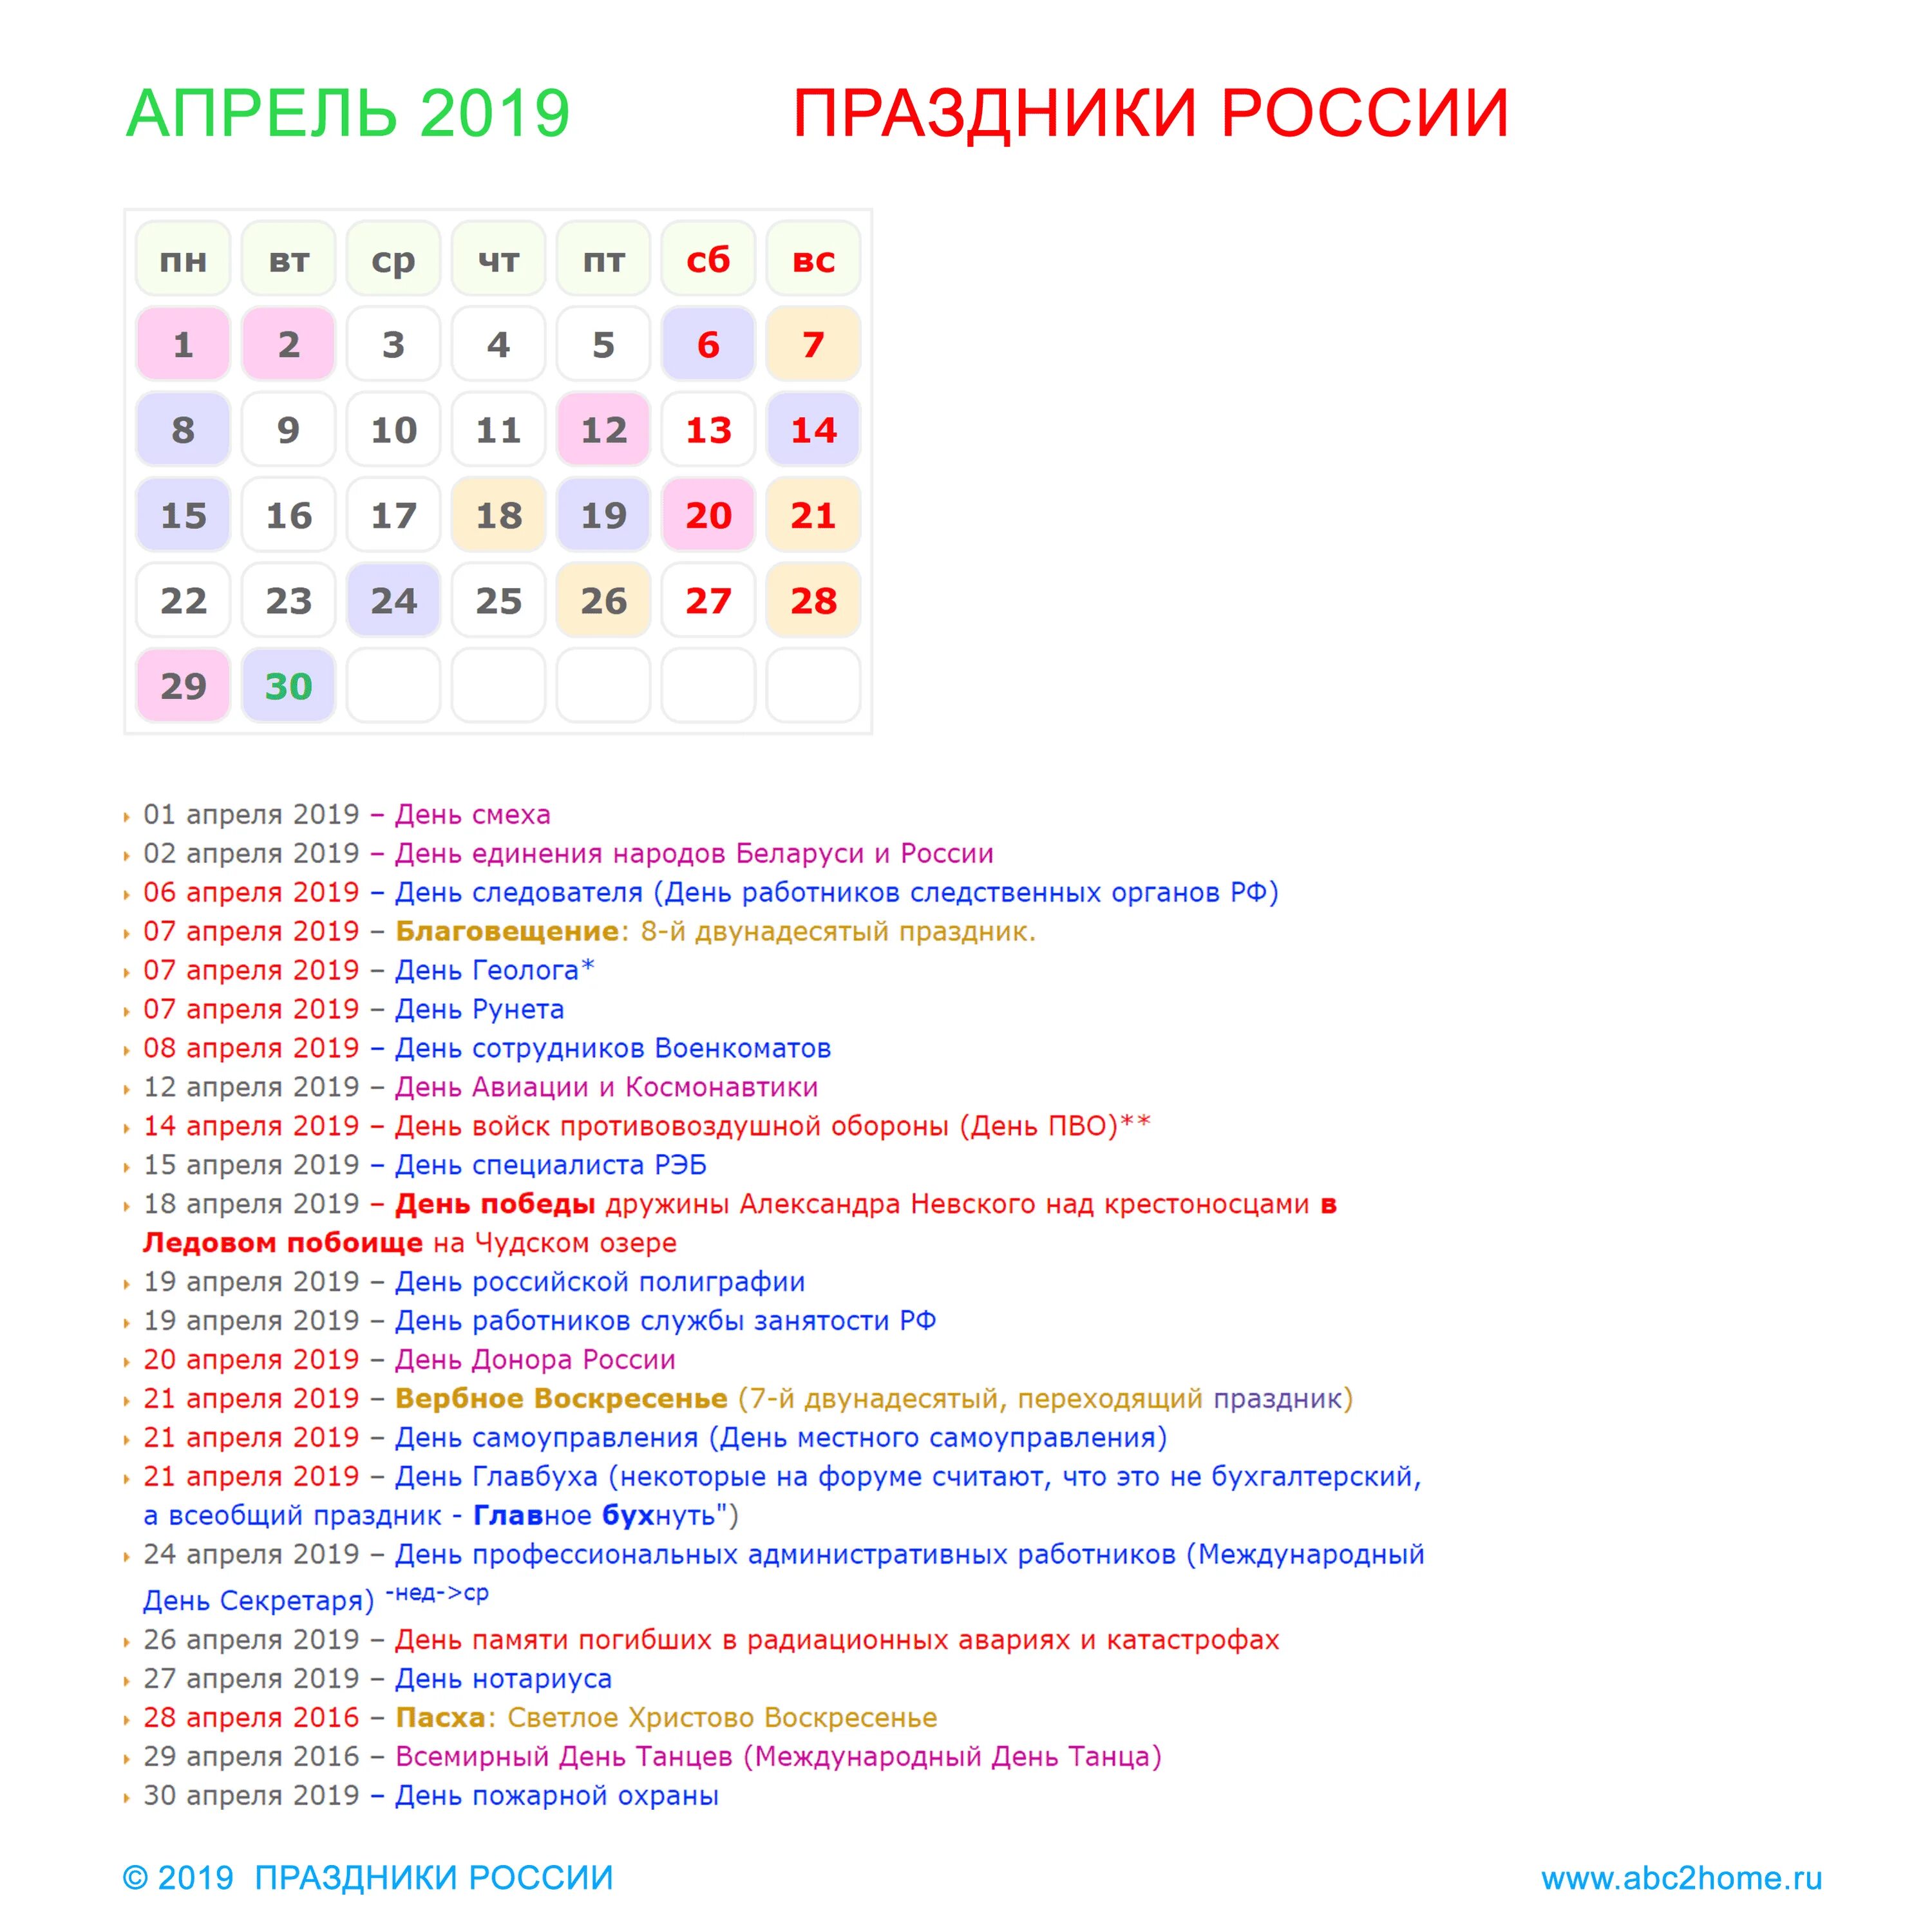 Дни в июне 2019 года. Праздники в апреле. Праздники России список. Ближайшие праздники в России. Праздники в апреле каждый день.